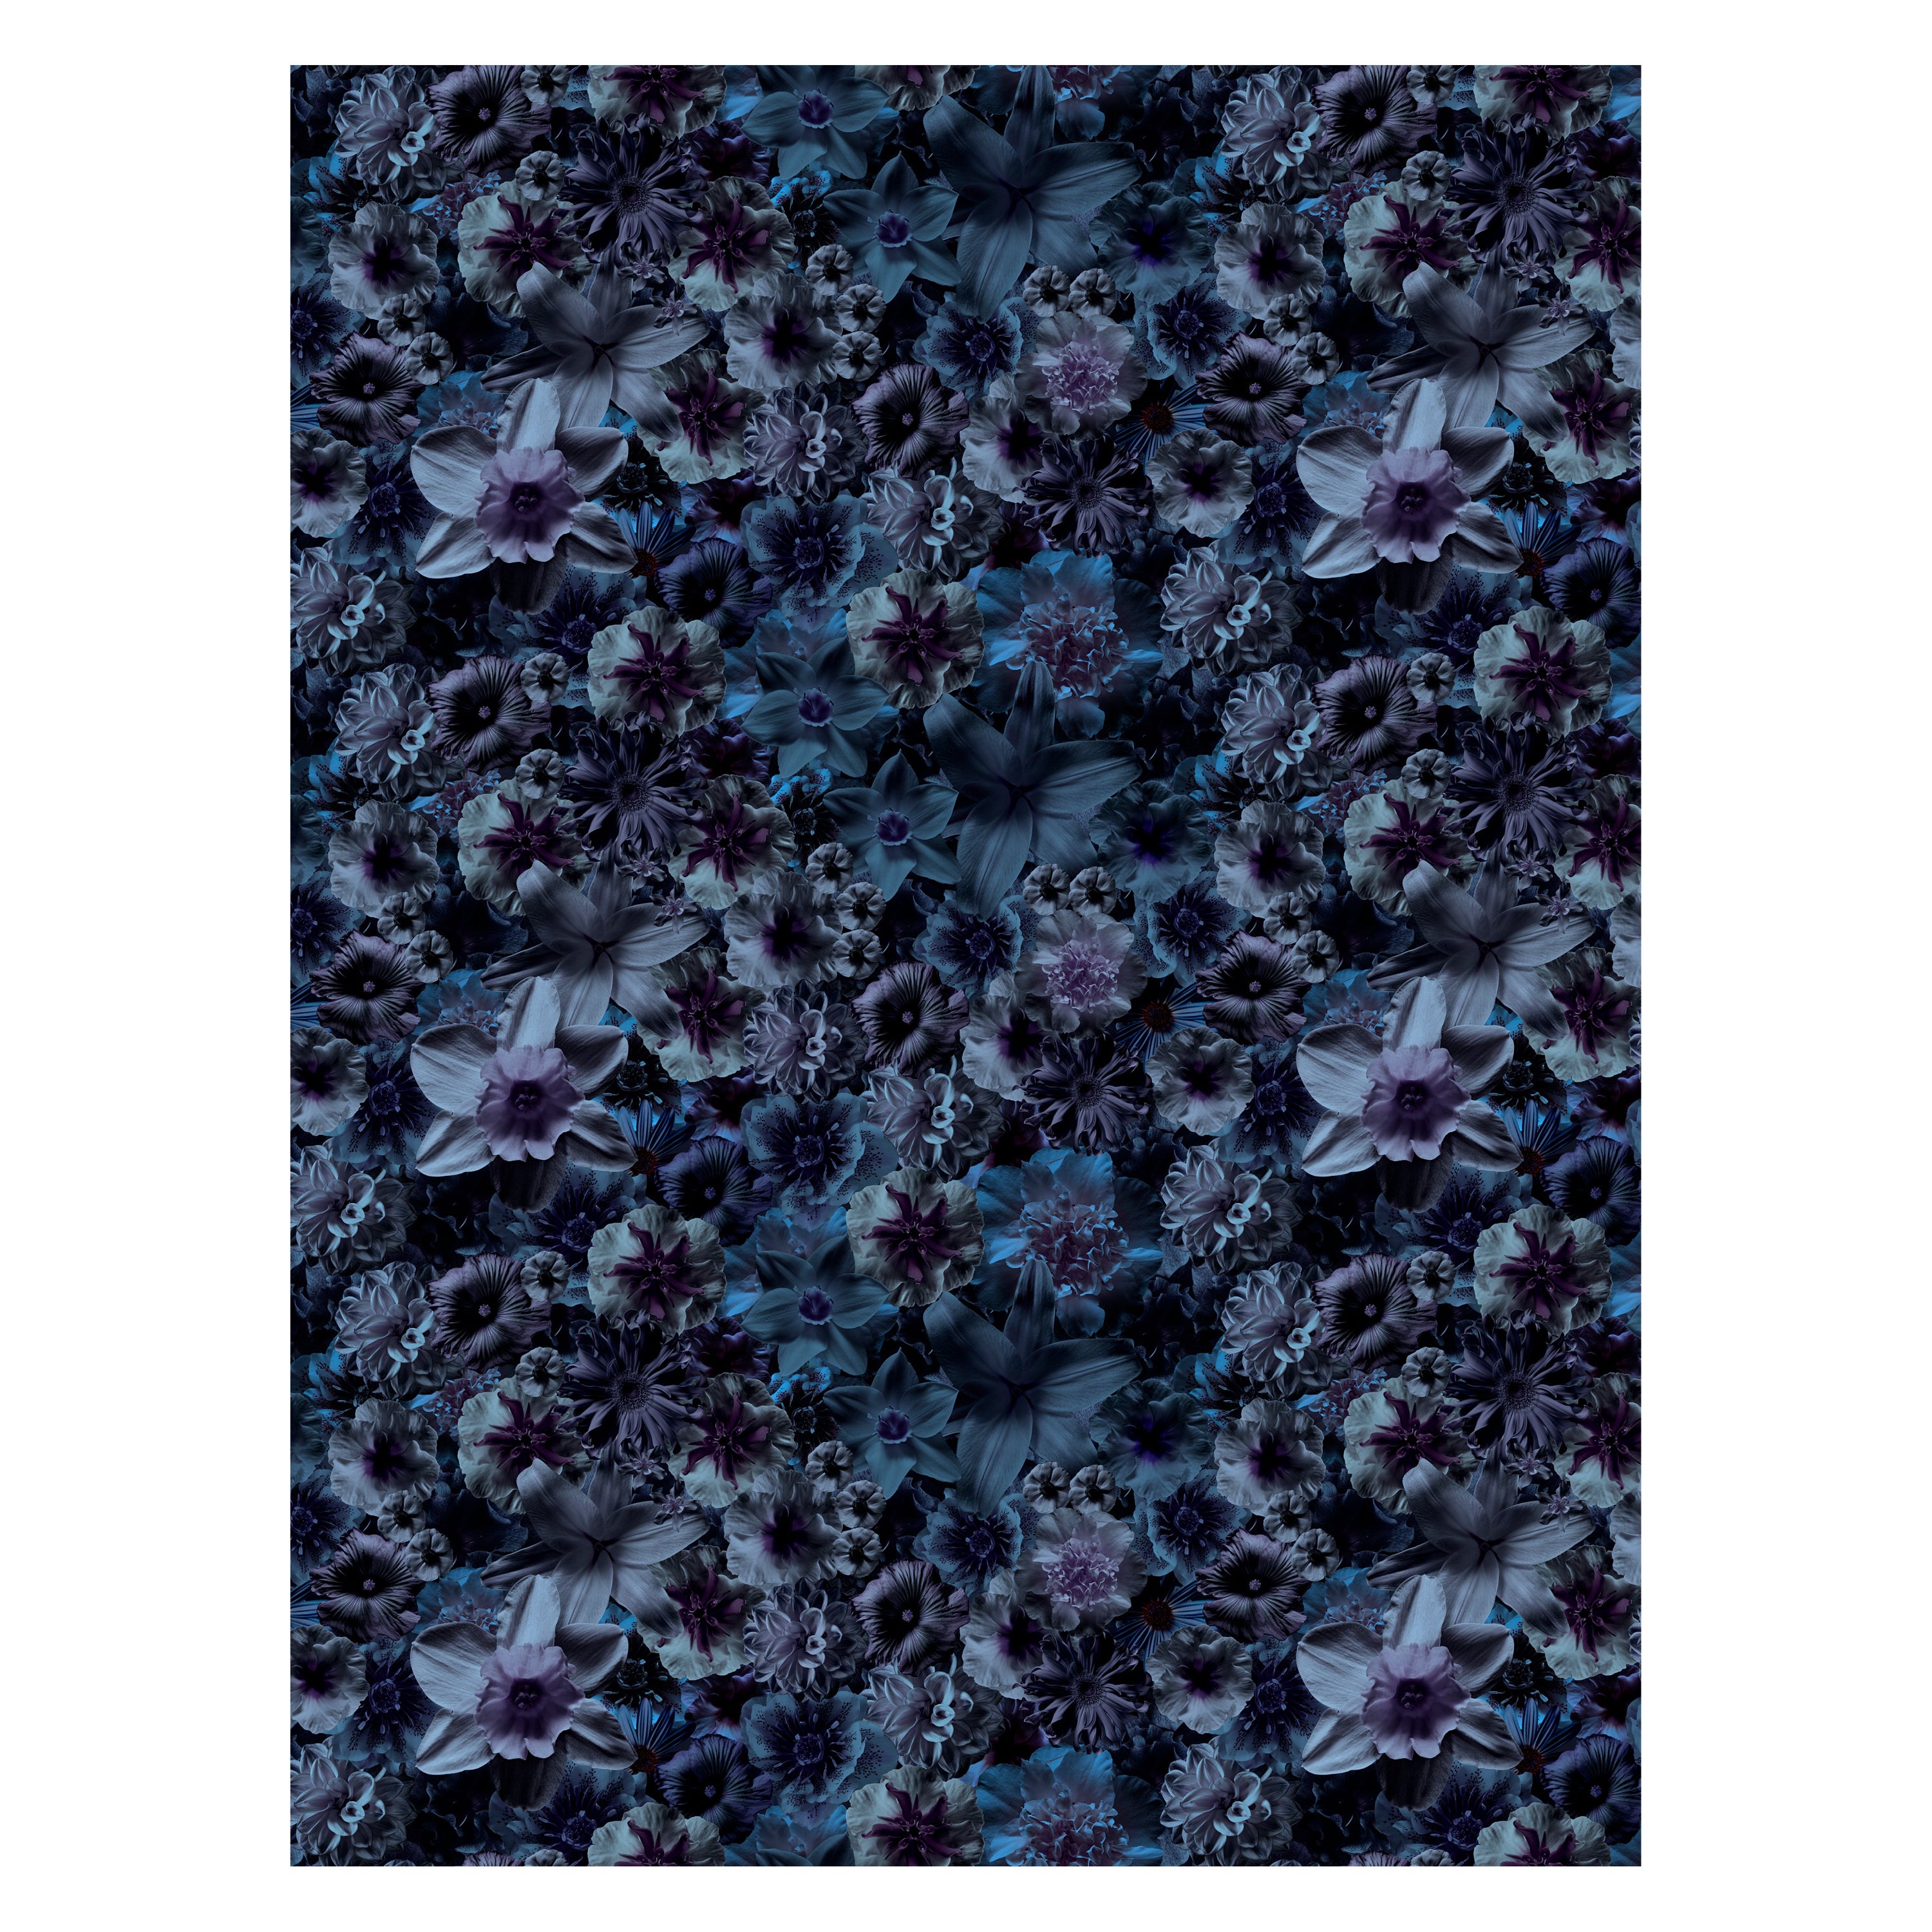 Grand tapis rectangulaire Flowergarden Night de Moooi en laine avec finition à ourlet aveugle